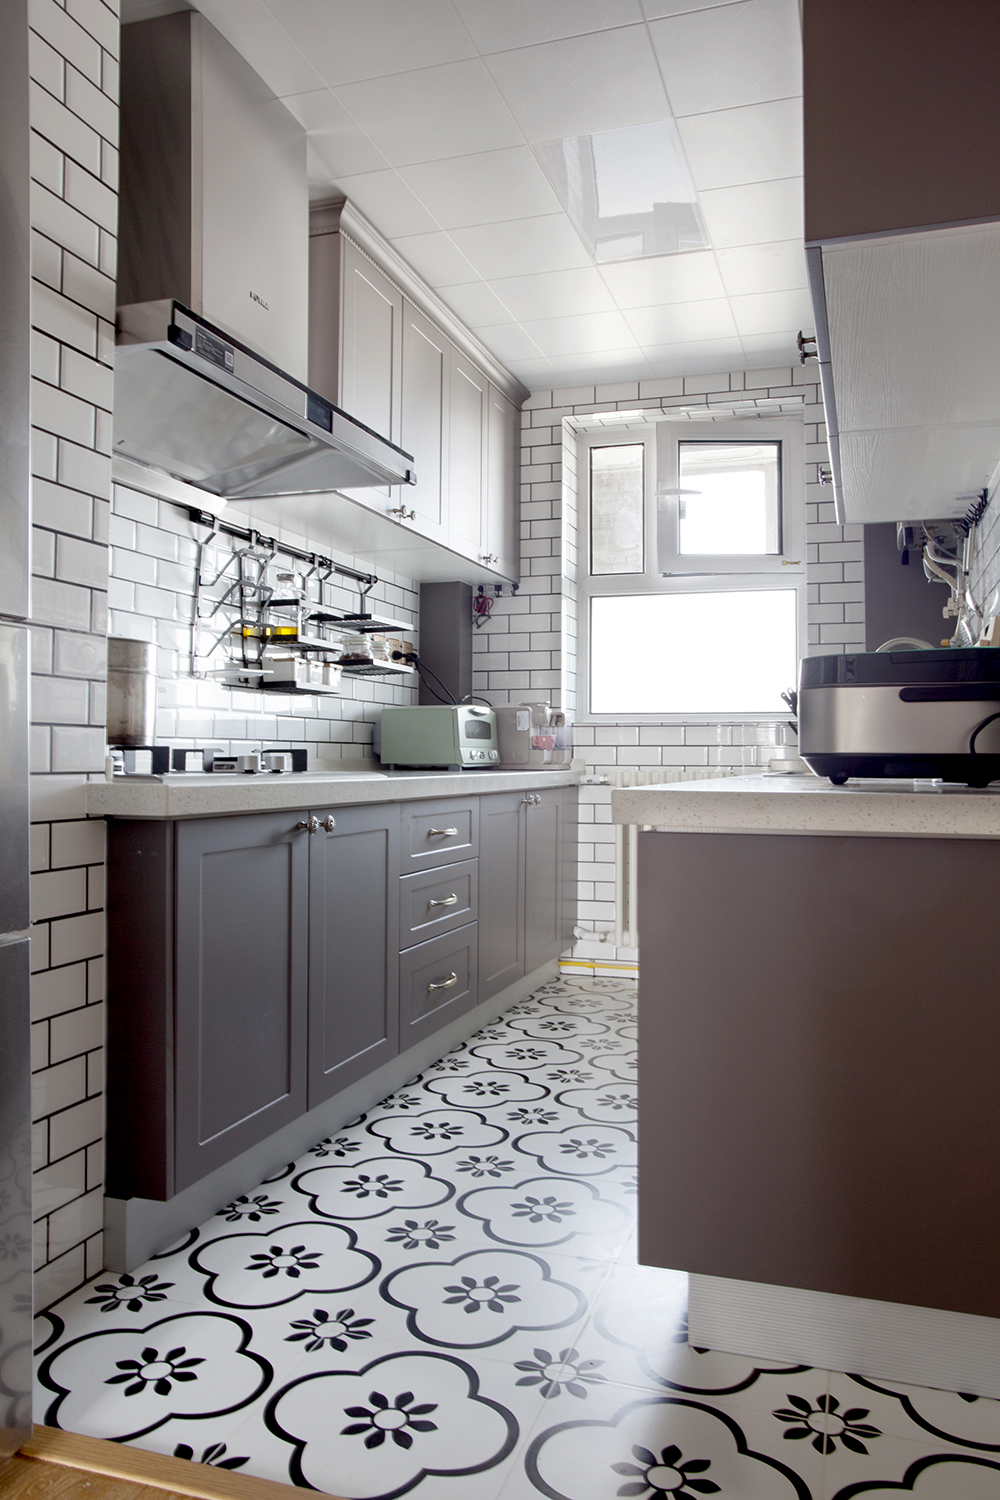 砖红色和白色形成了空间的主要设计元素，厨房设计中透露着主人对生活品质的追求。